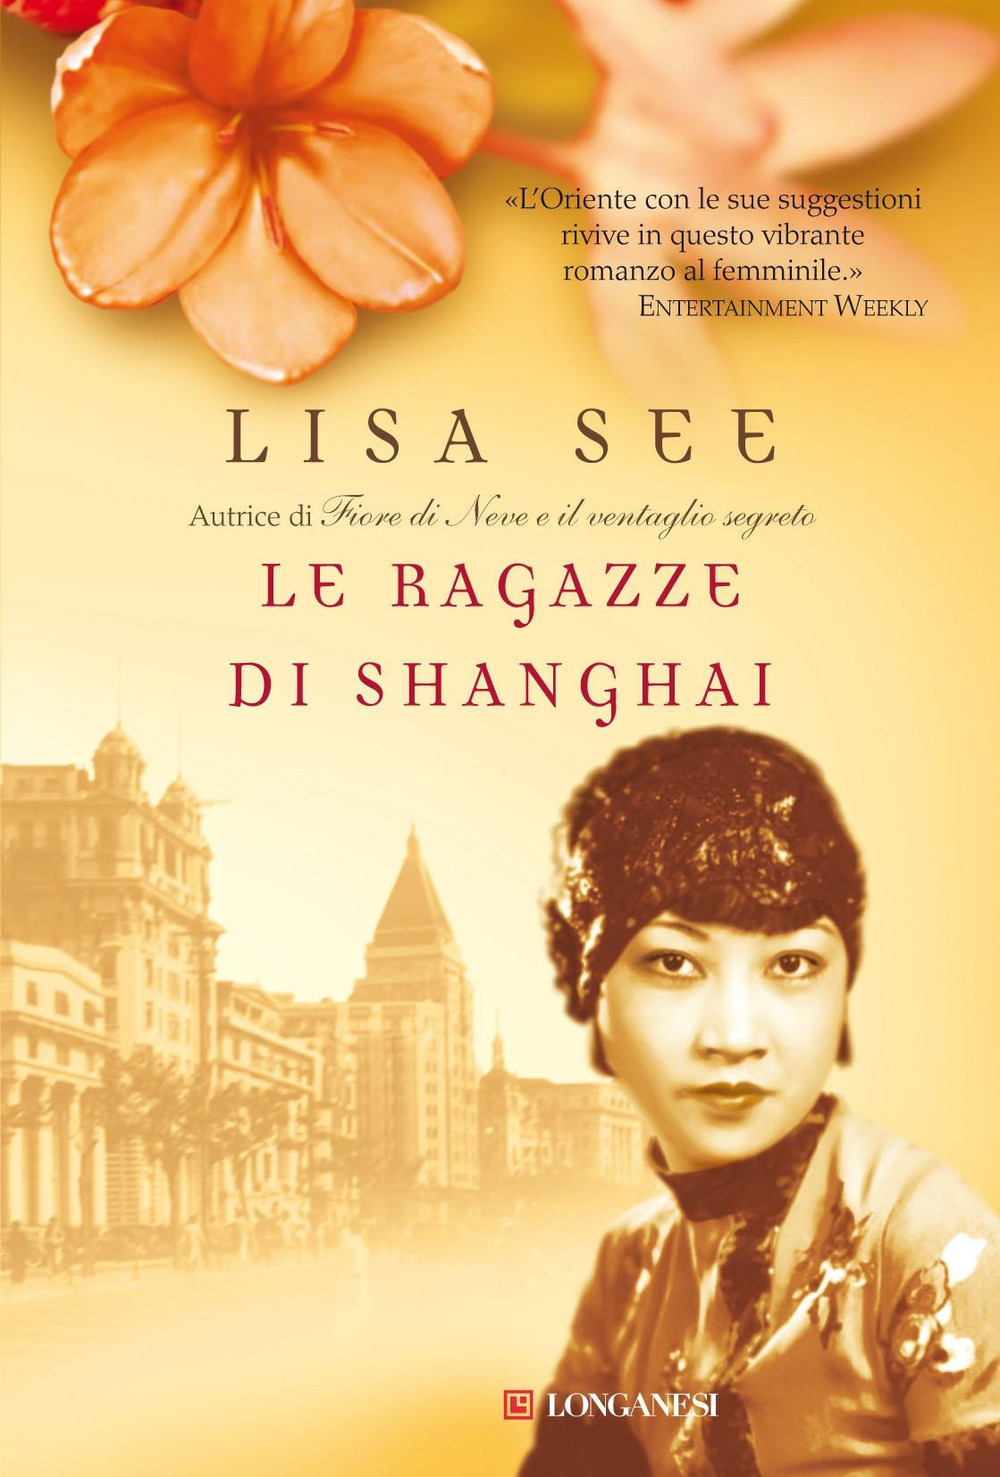 Libri Lisa See - Le Ragazze Di Shanghai NUOVO SIGILLATO, EDIZIONE DEL 01/10/2009 SUBITO DISPONIBILE